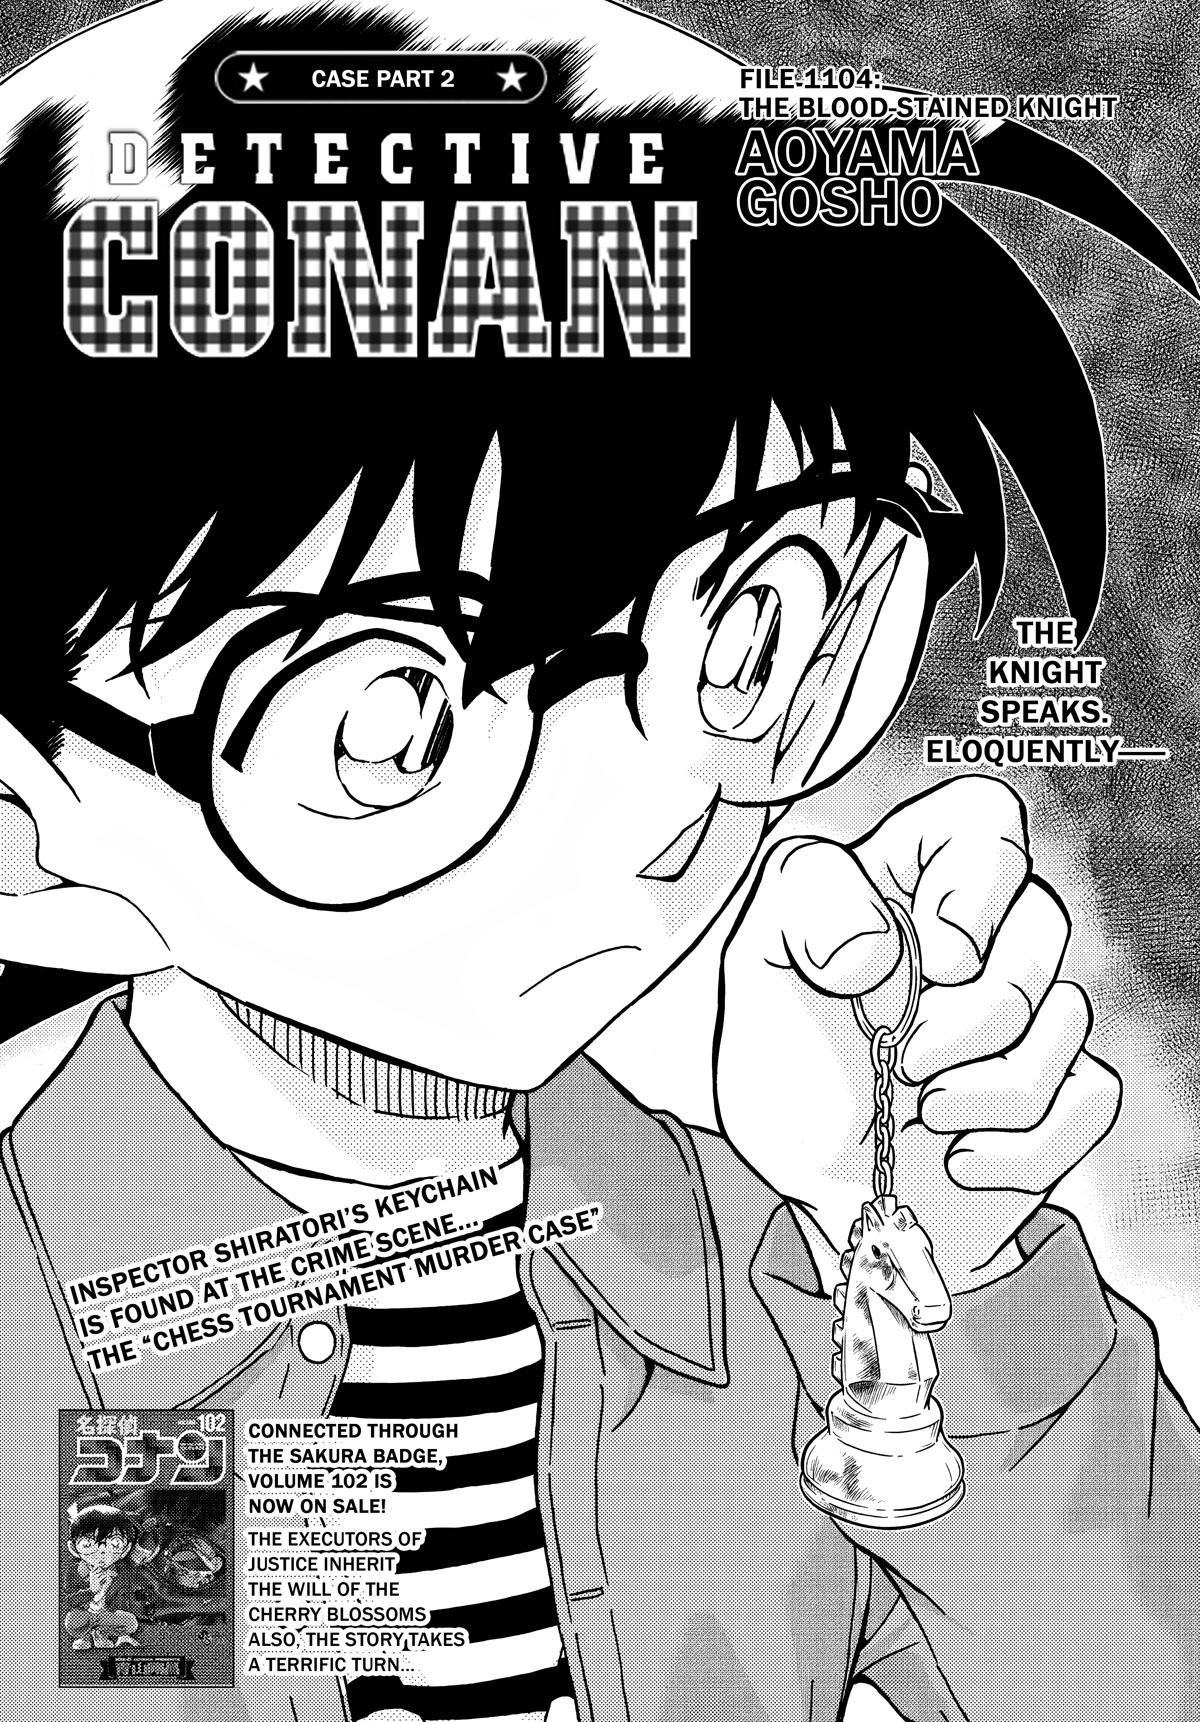 Detective Conan - episode 1104 - 1